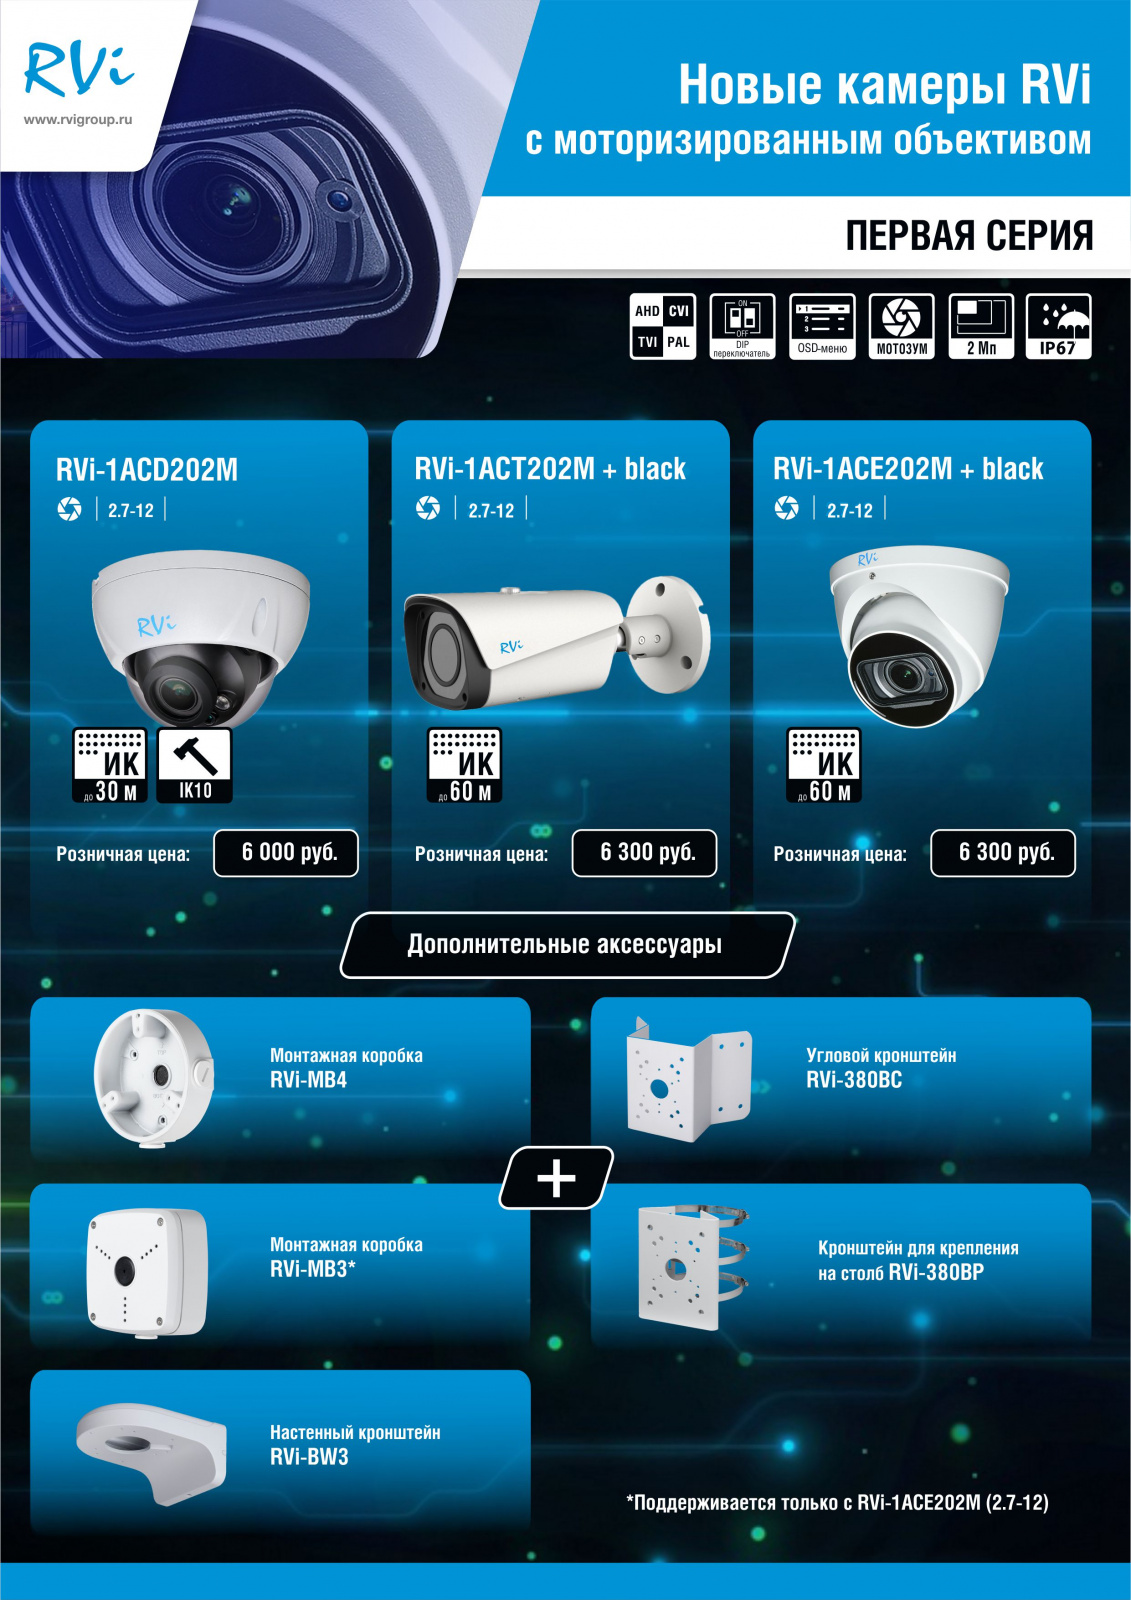 Новые камеры RVI с моторизованным объективом